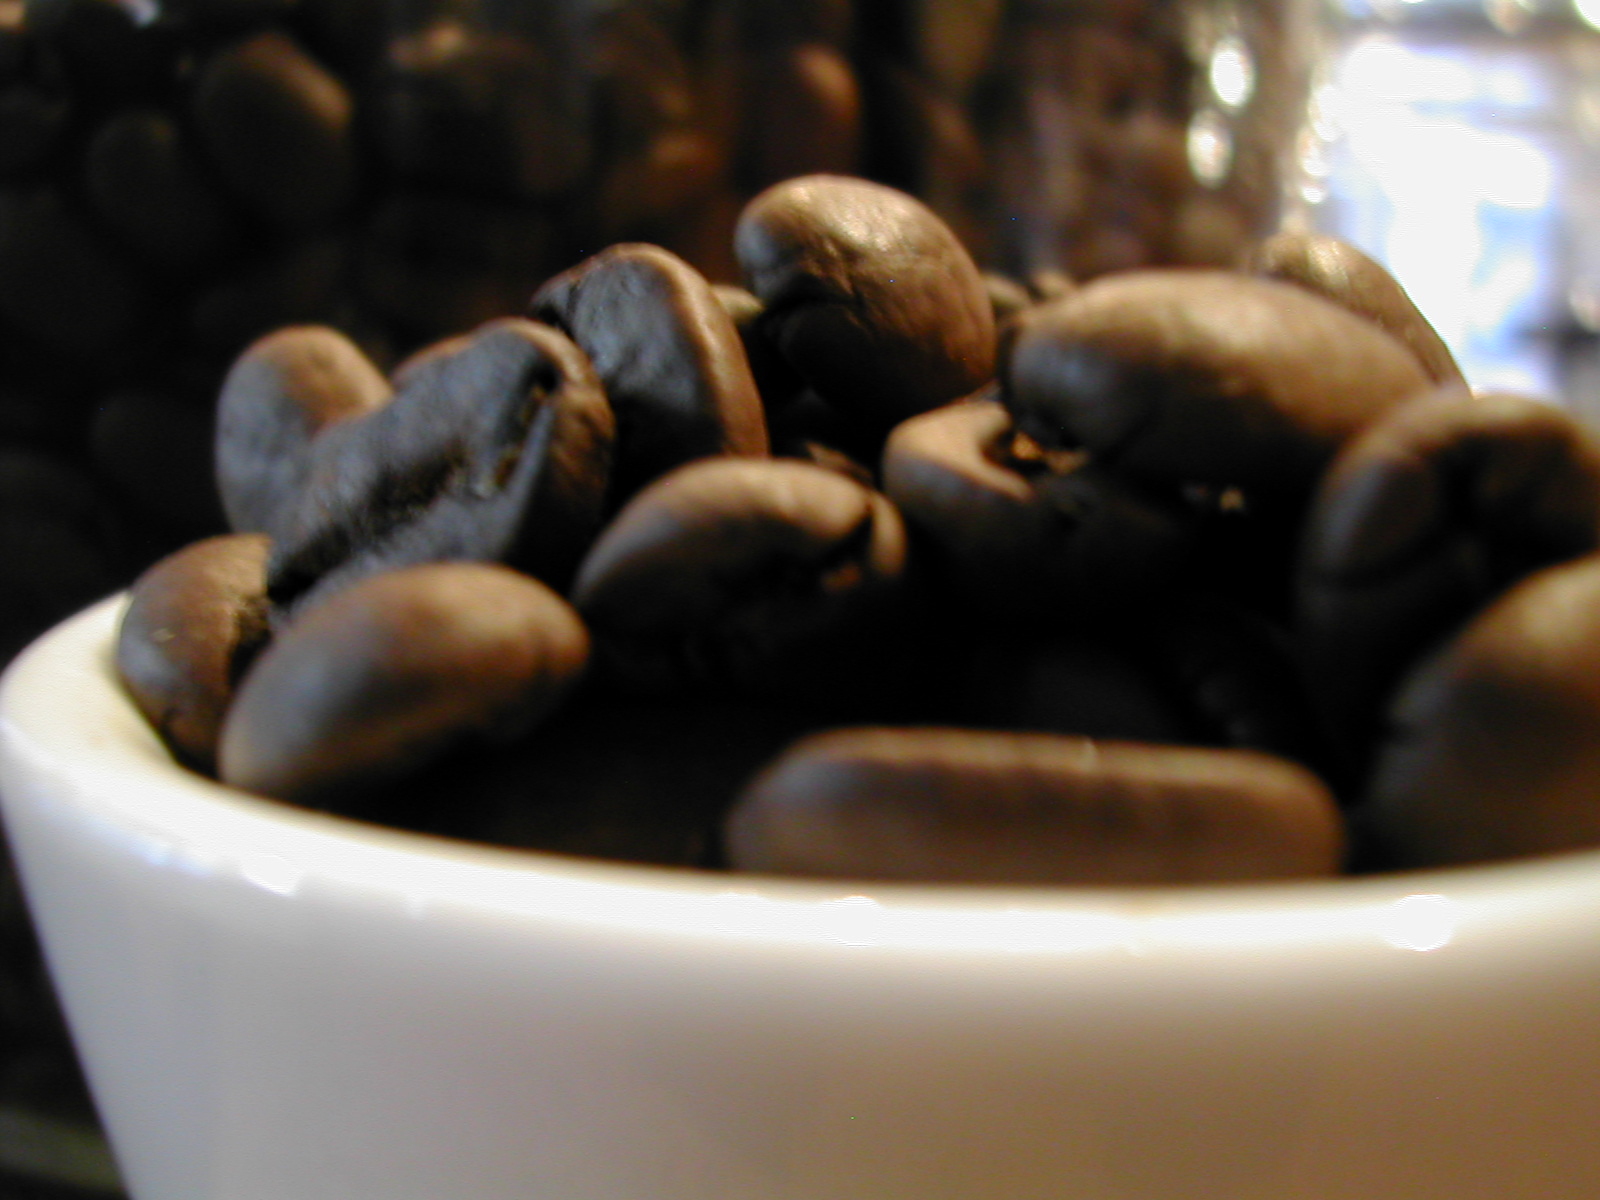 コーヒー豆 マンデリン ビッグアチェG-1 Mandheling- 送料無料でお届けします アチェ地区２００g100gあたり￥580-Sumatra ストア スマトラ島北部